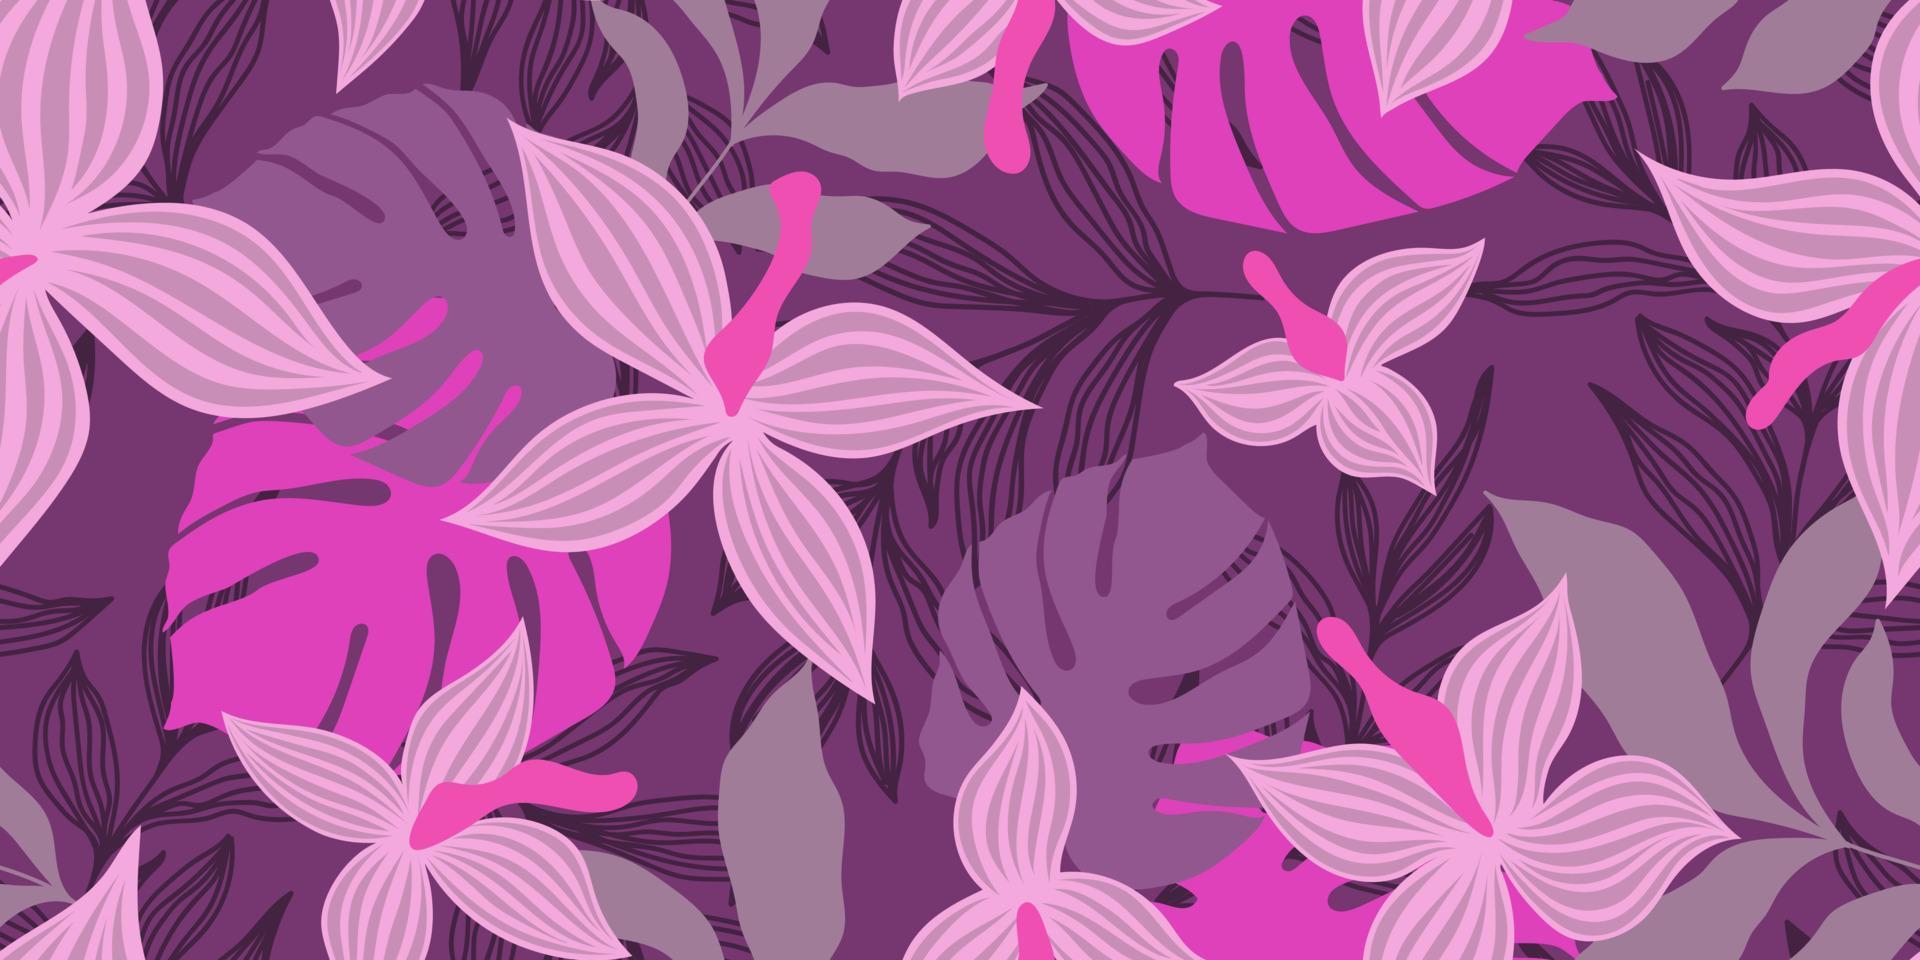 bannière lilas transparente de vecteur avec des fleurs roses et des feuilles tropicales colorées